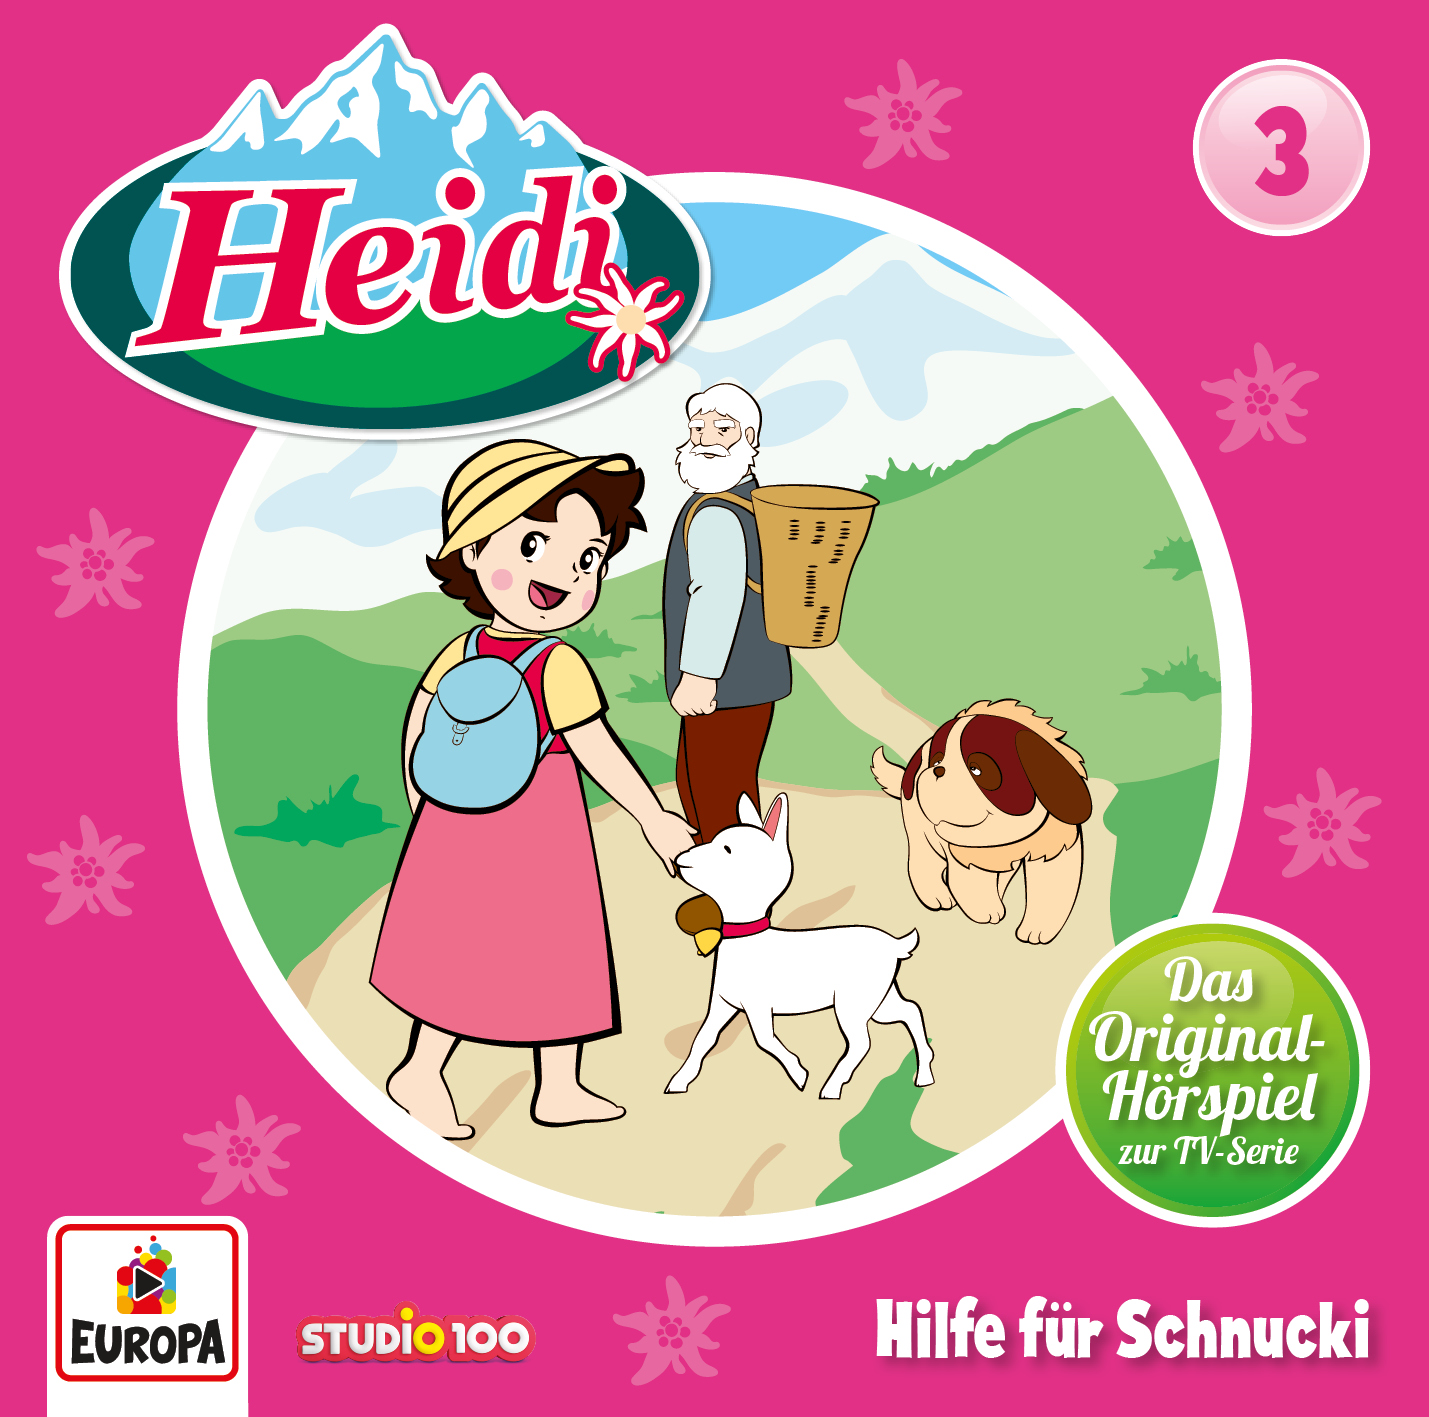 Heidi: Hilfe für Schnucki